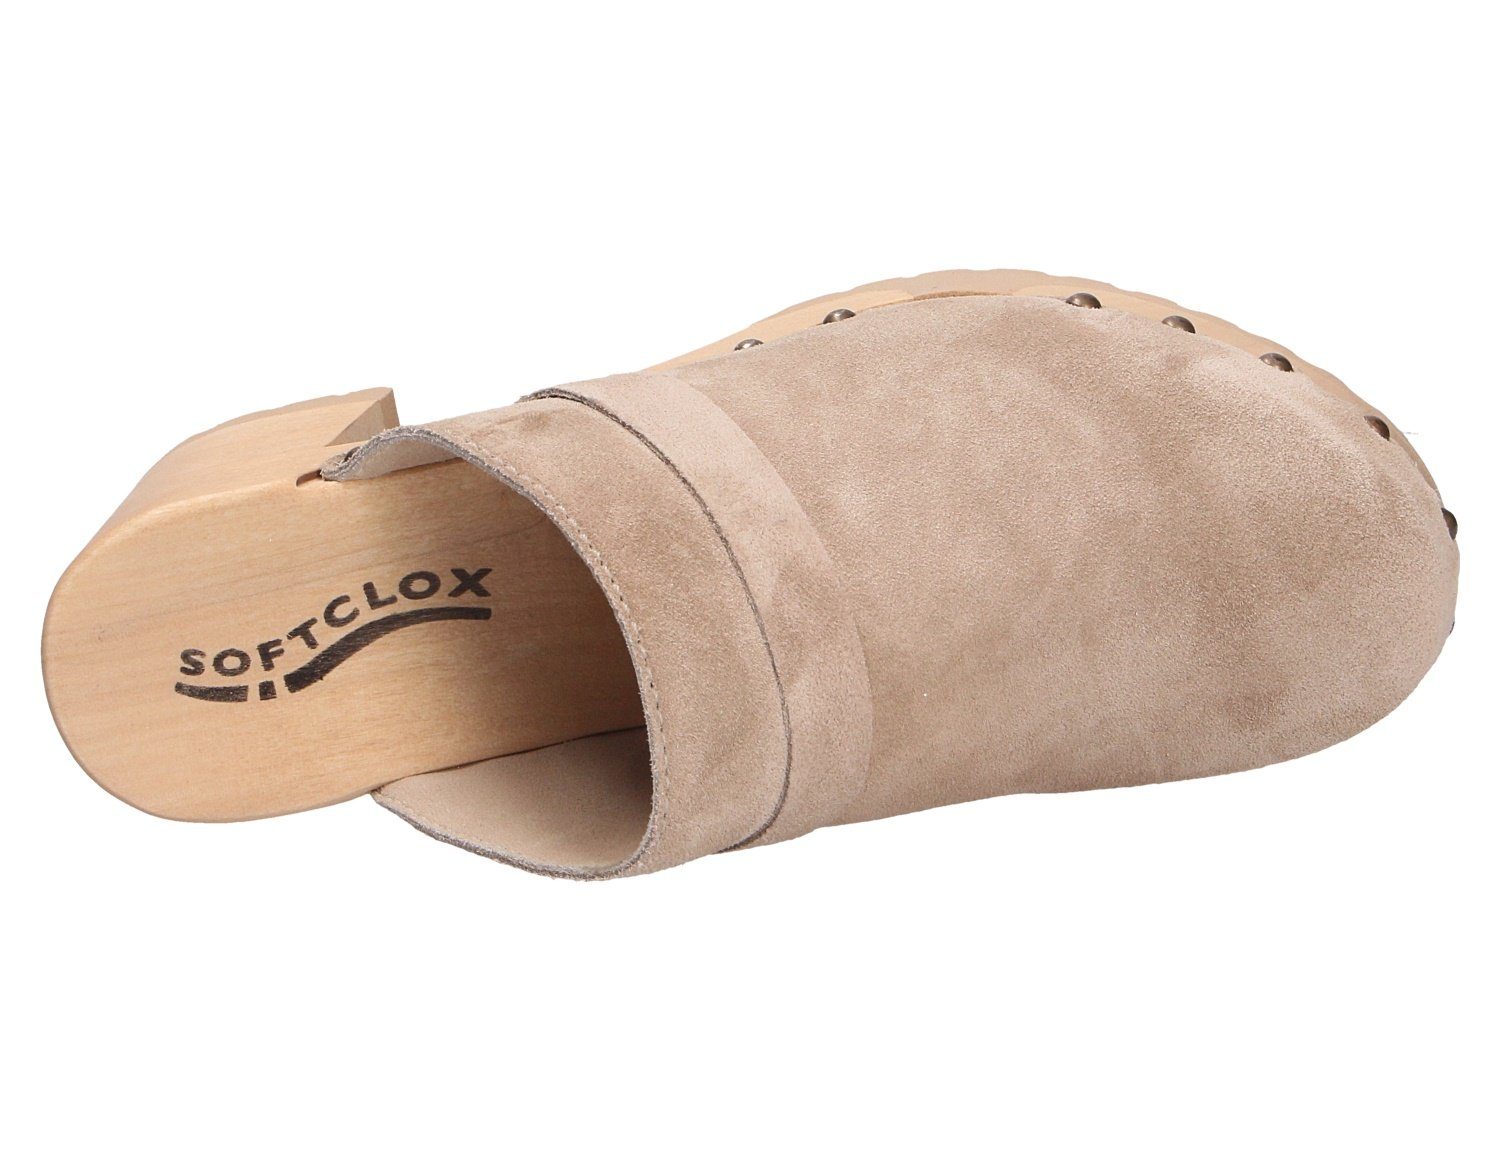 Softclox Pantolette Flexible Laufsohle